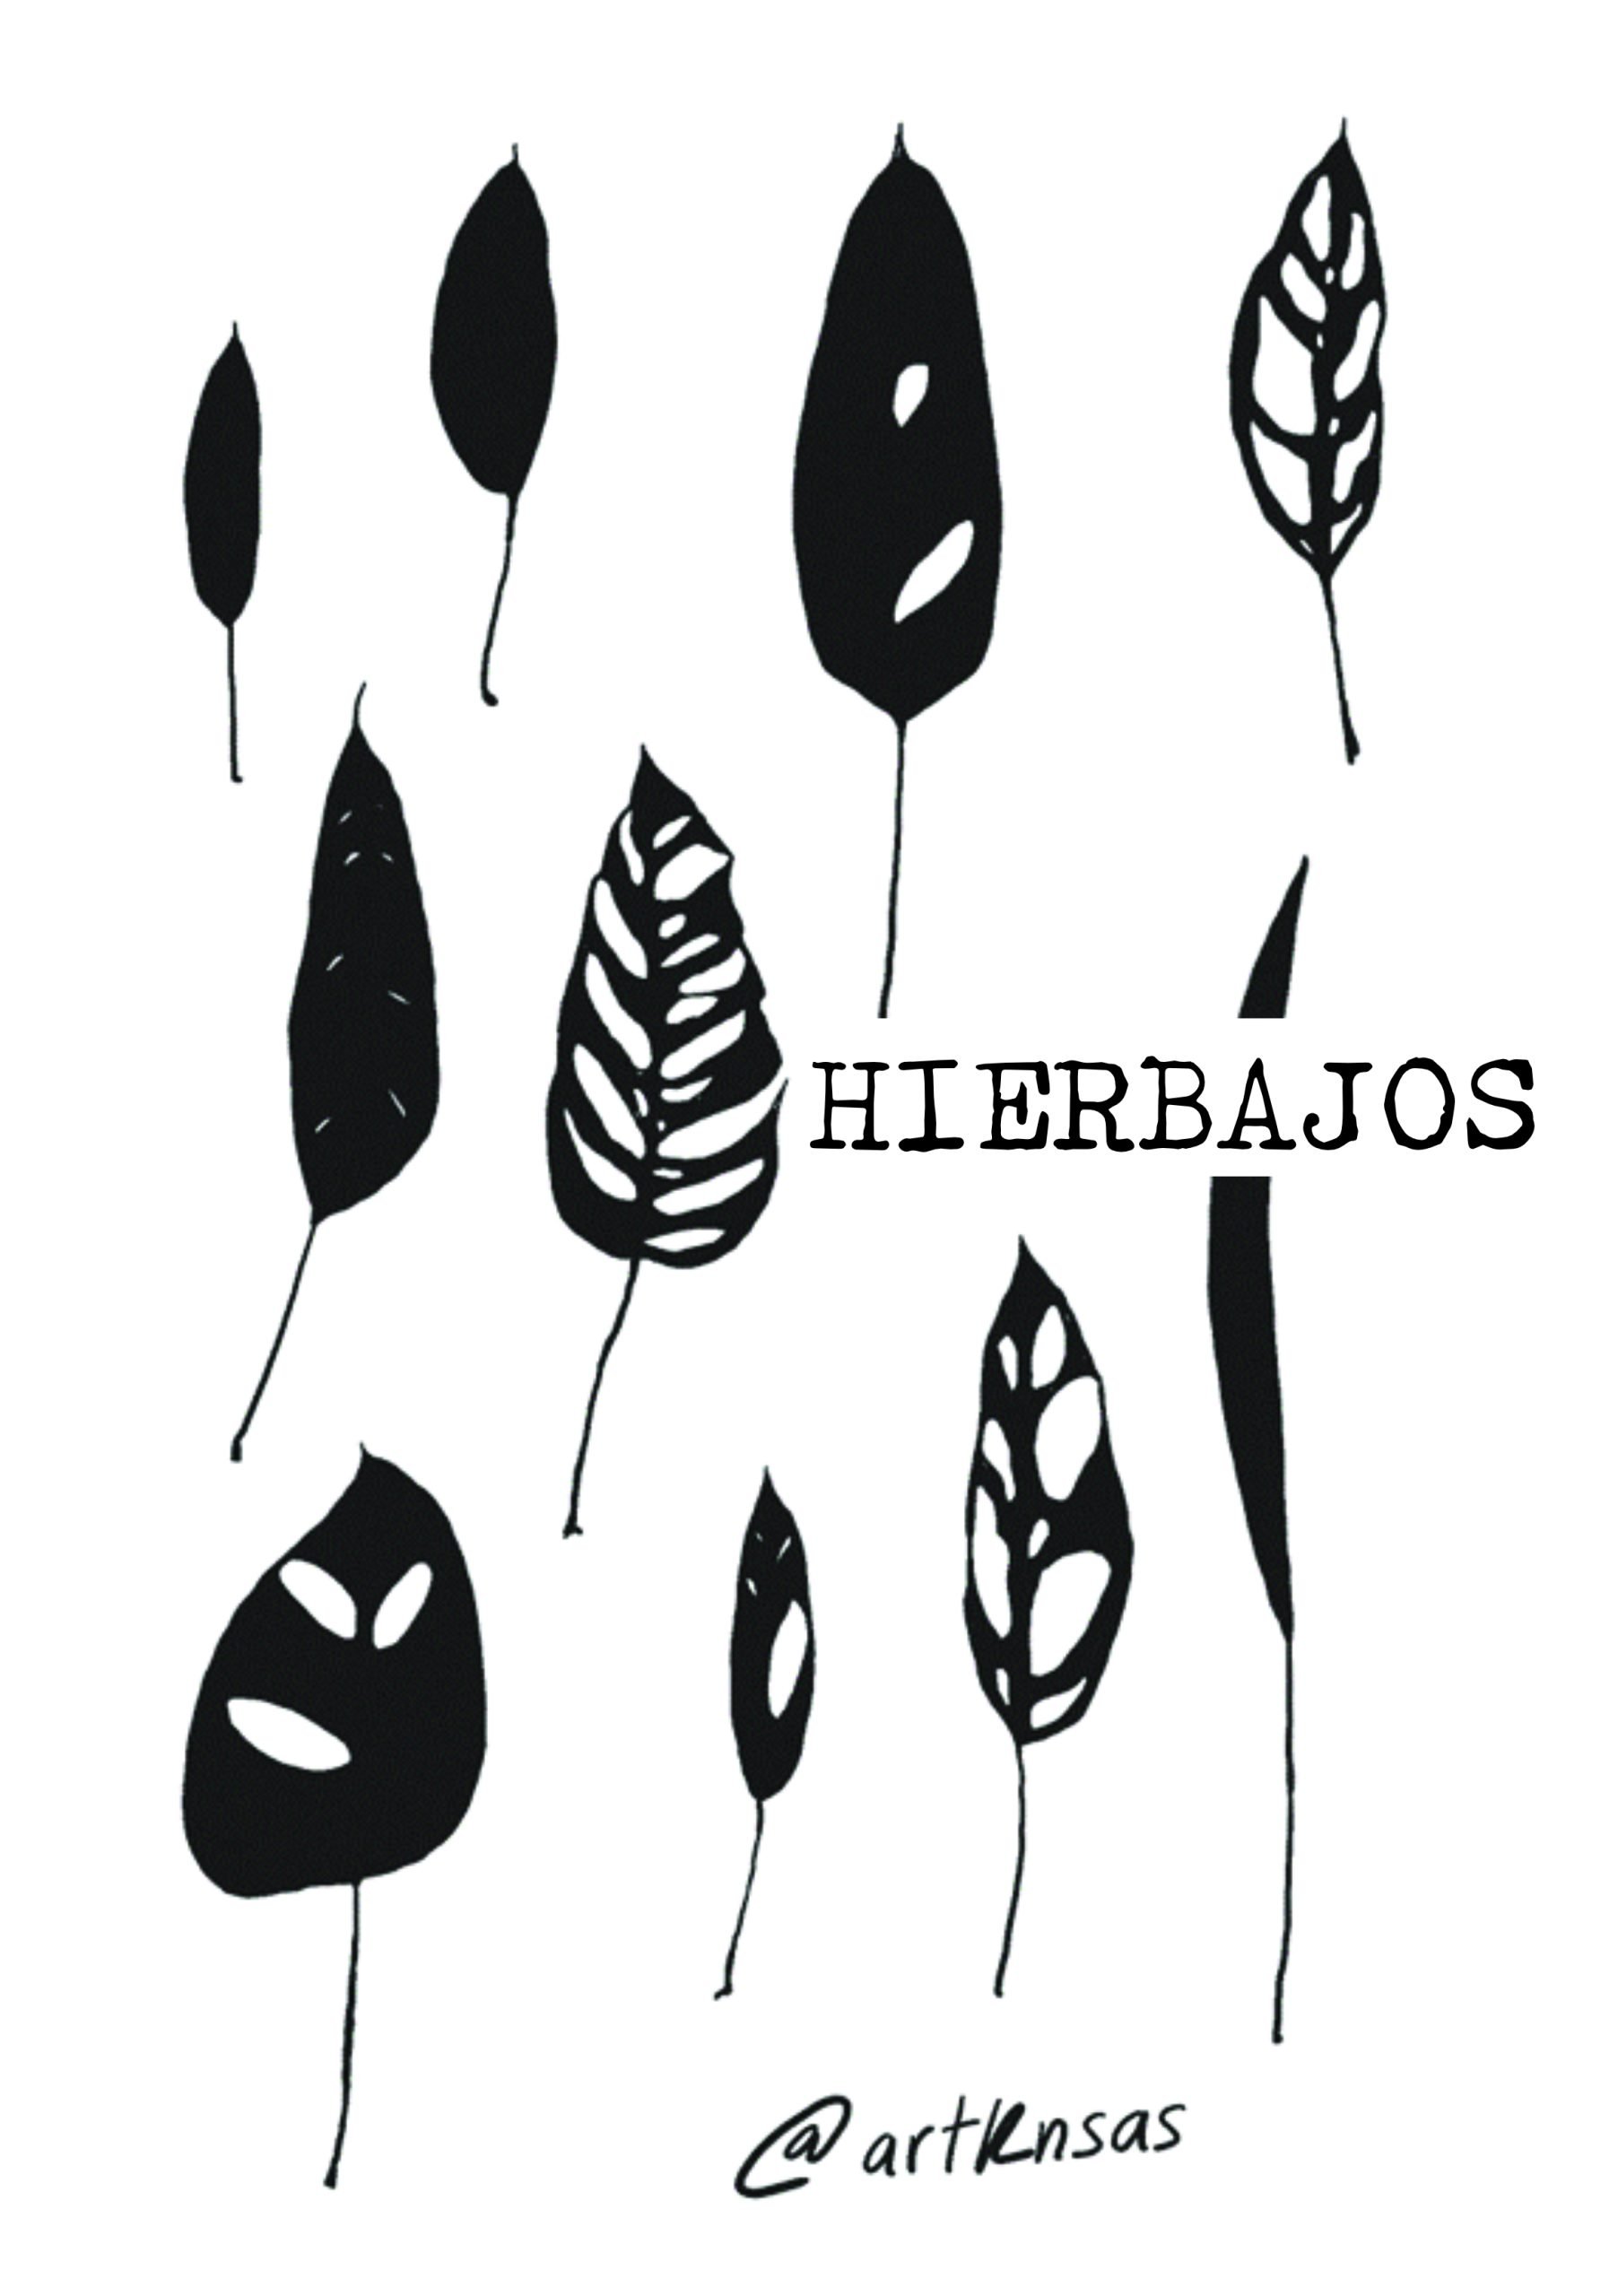 Hierbajos “Weeds”